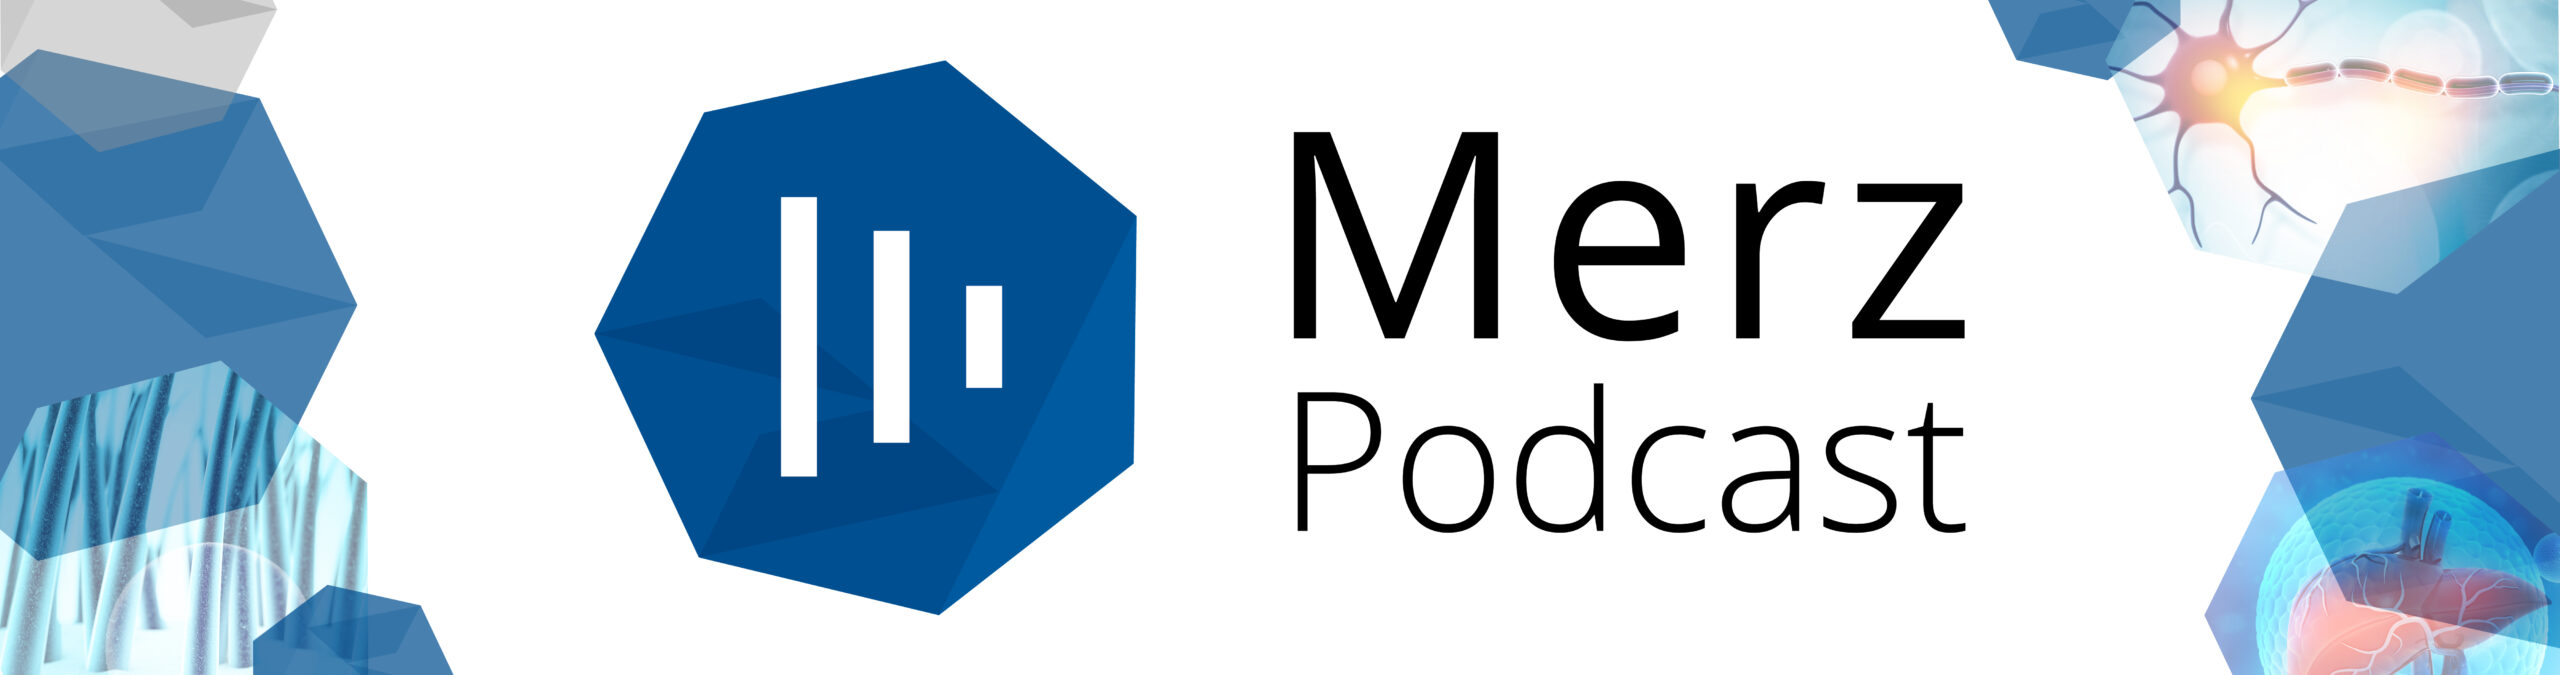 Headerbild Merz Podcast mit Heptagons. In einigen Heptagons sind eine Leber, eine Nervenzelle und Haare abgebildet.